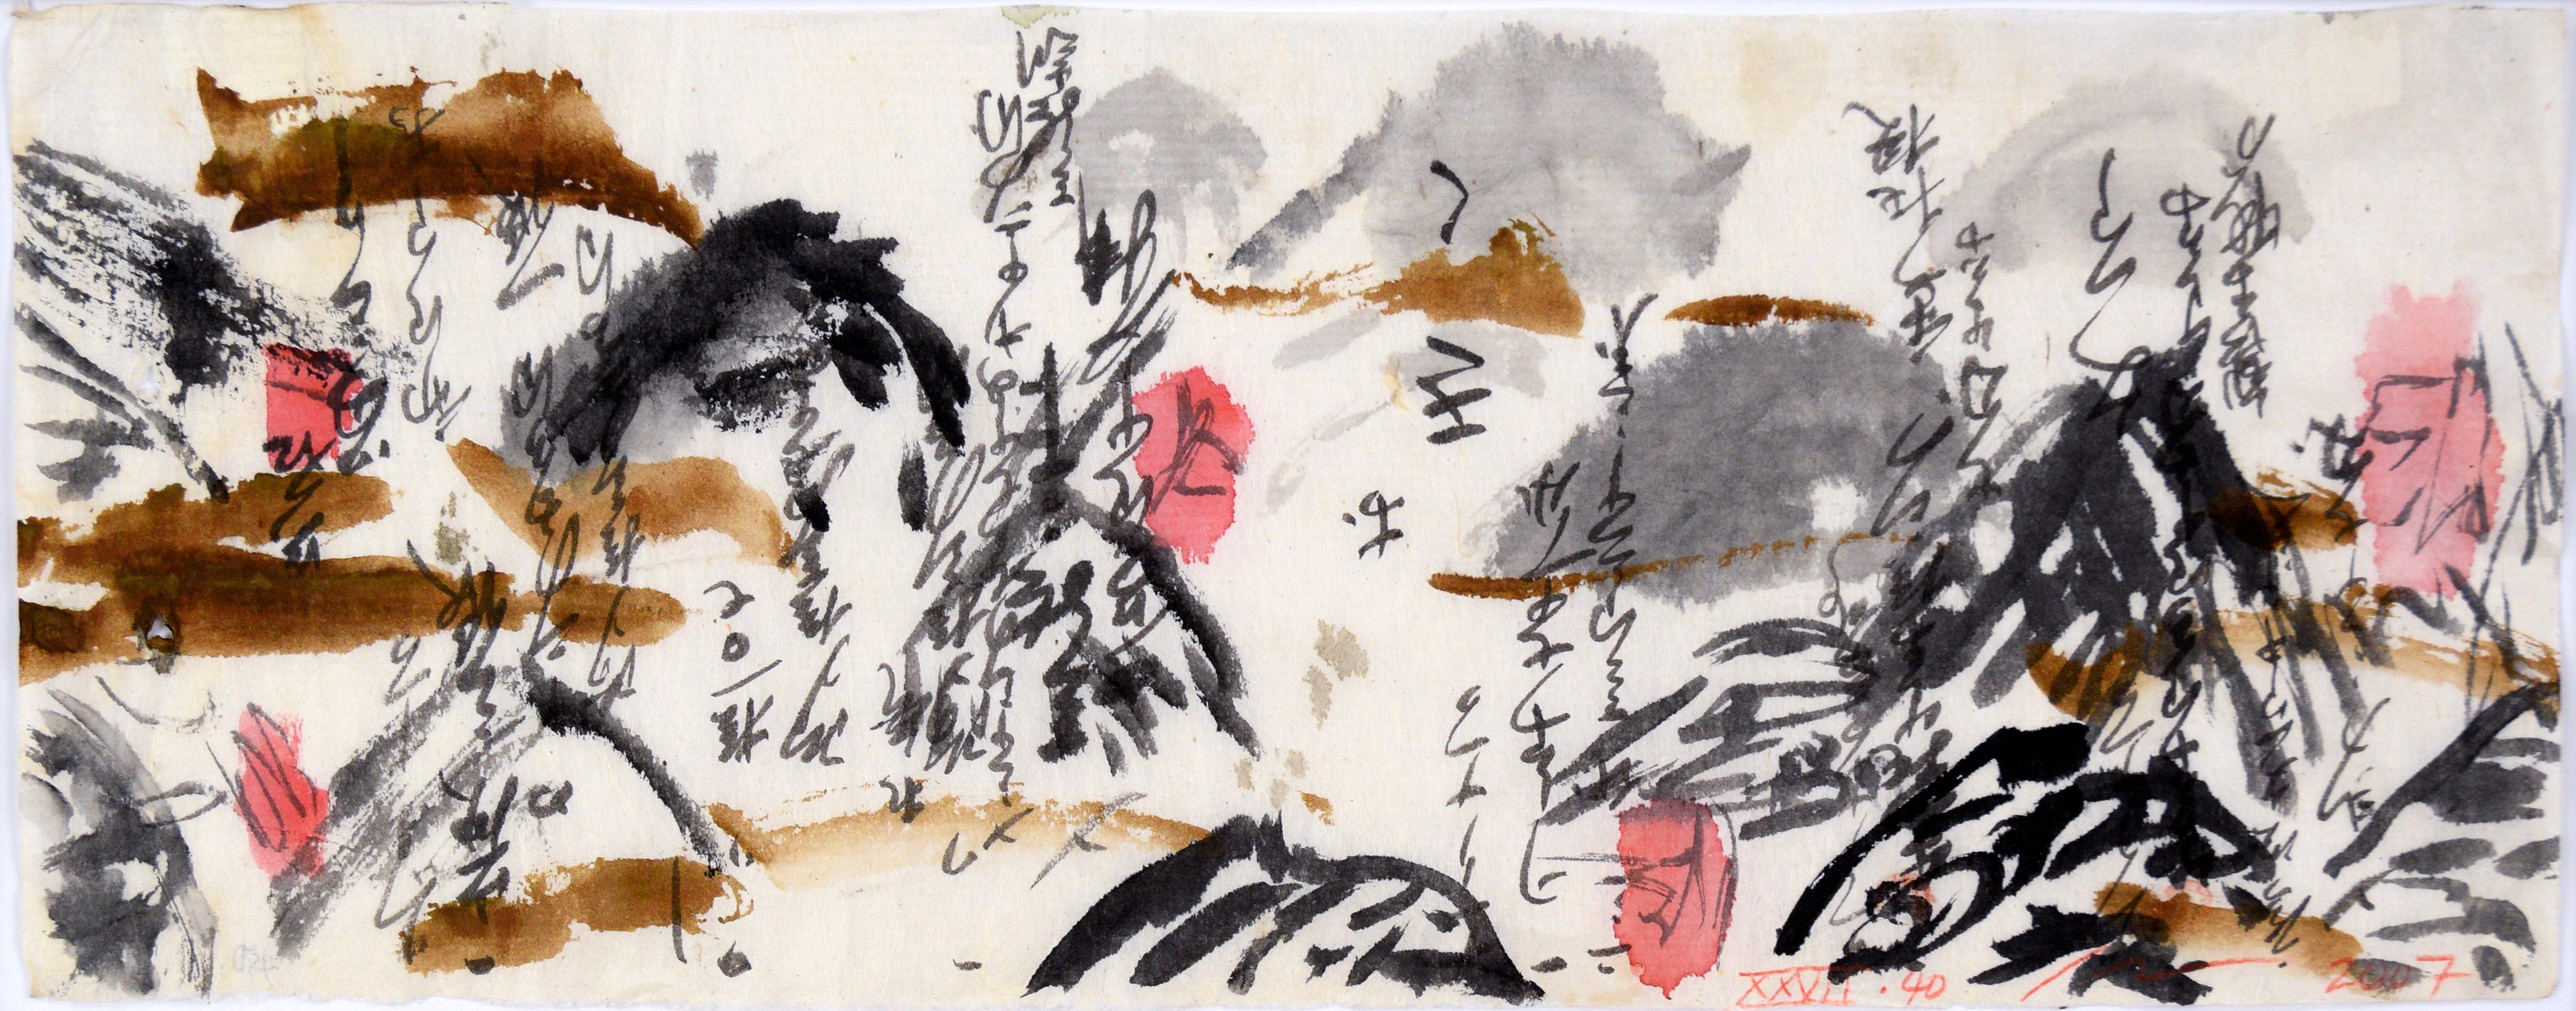 Calligraphie abstraite Panorama I - Calligraphie japonaise sur papier de riz - Painting de Michael Pauker 